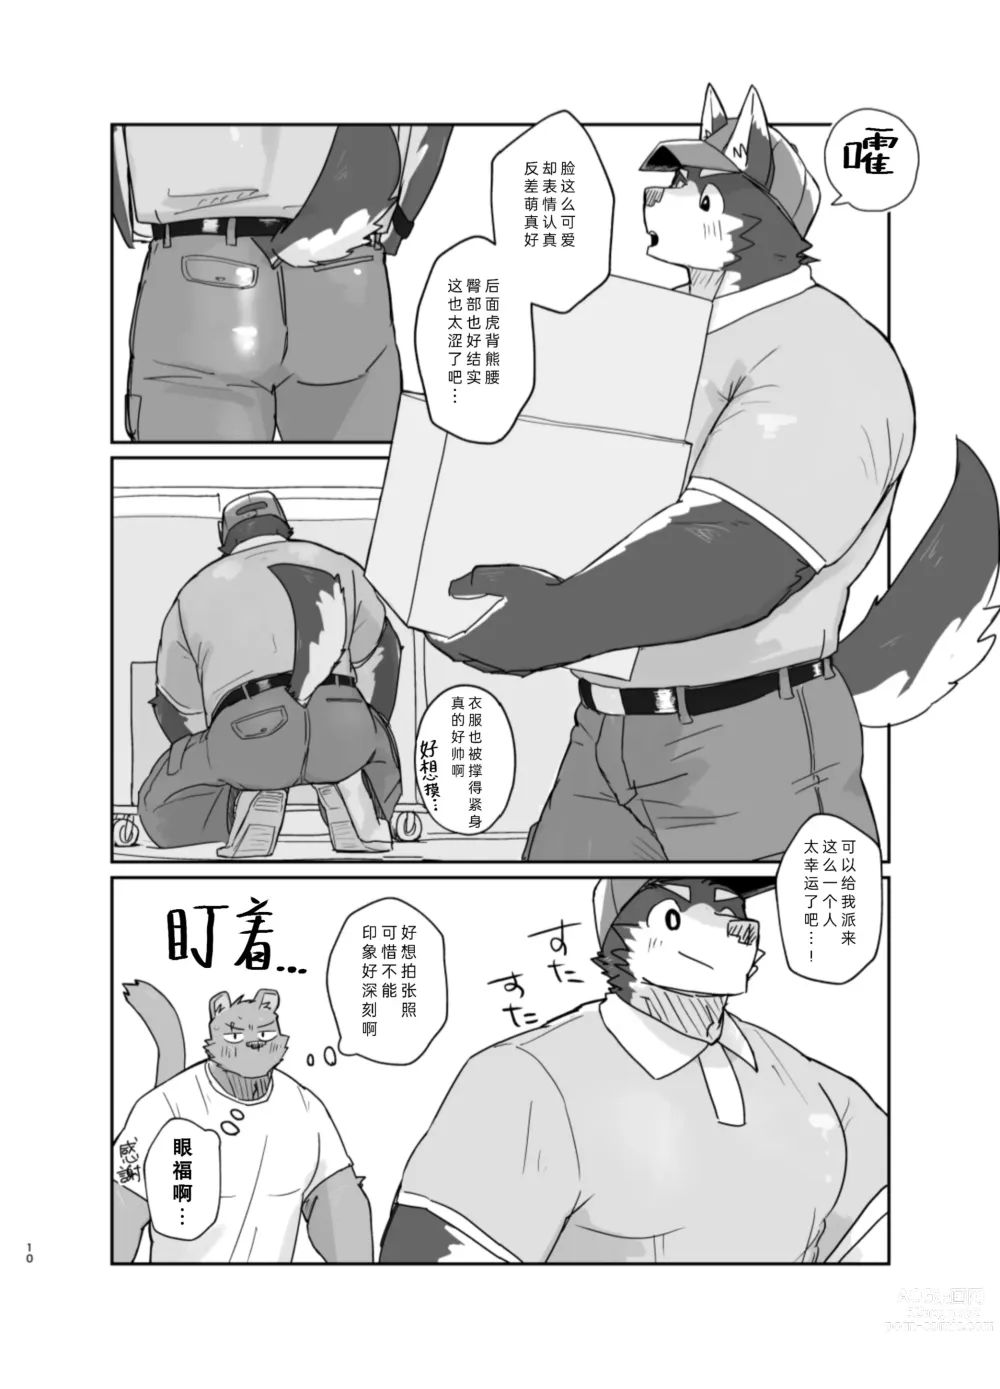 Page 10 of doujinshi 搬家的十分钟服务